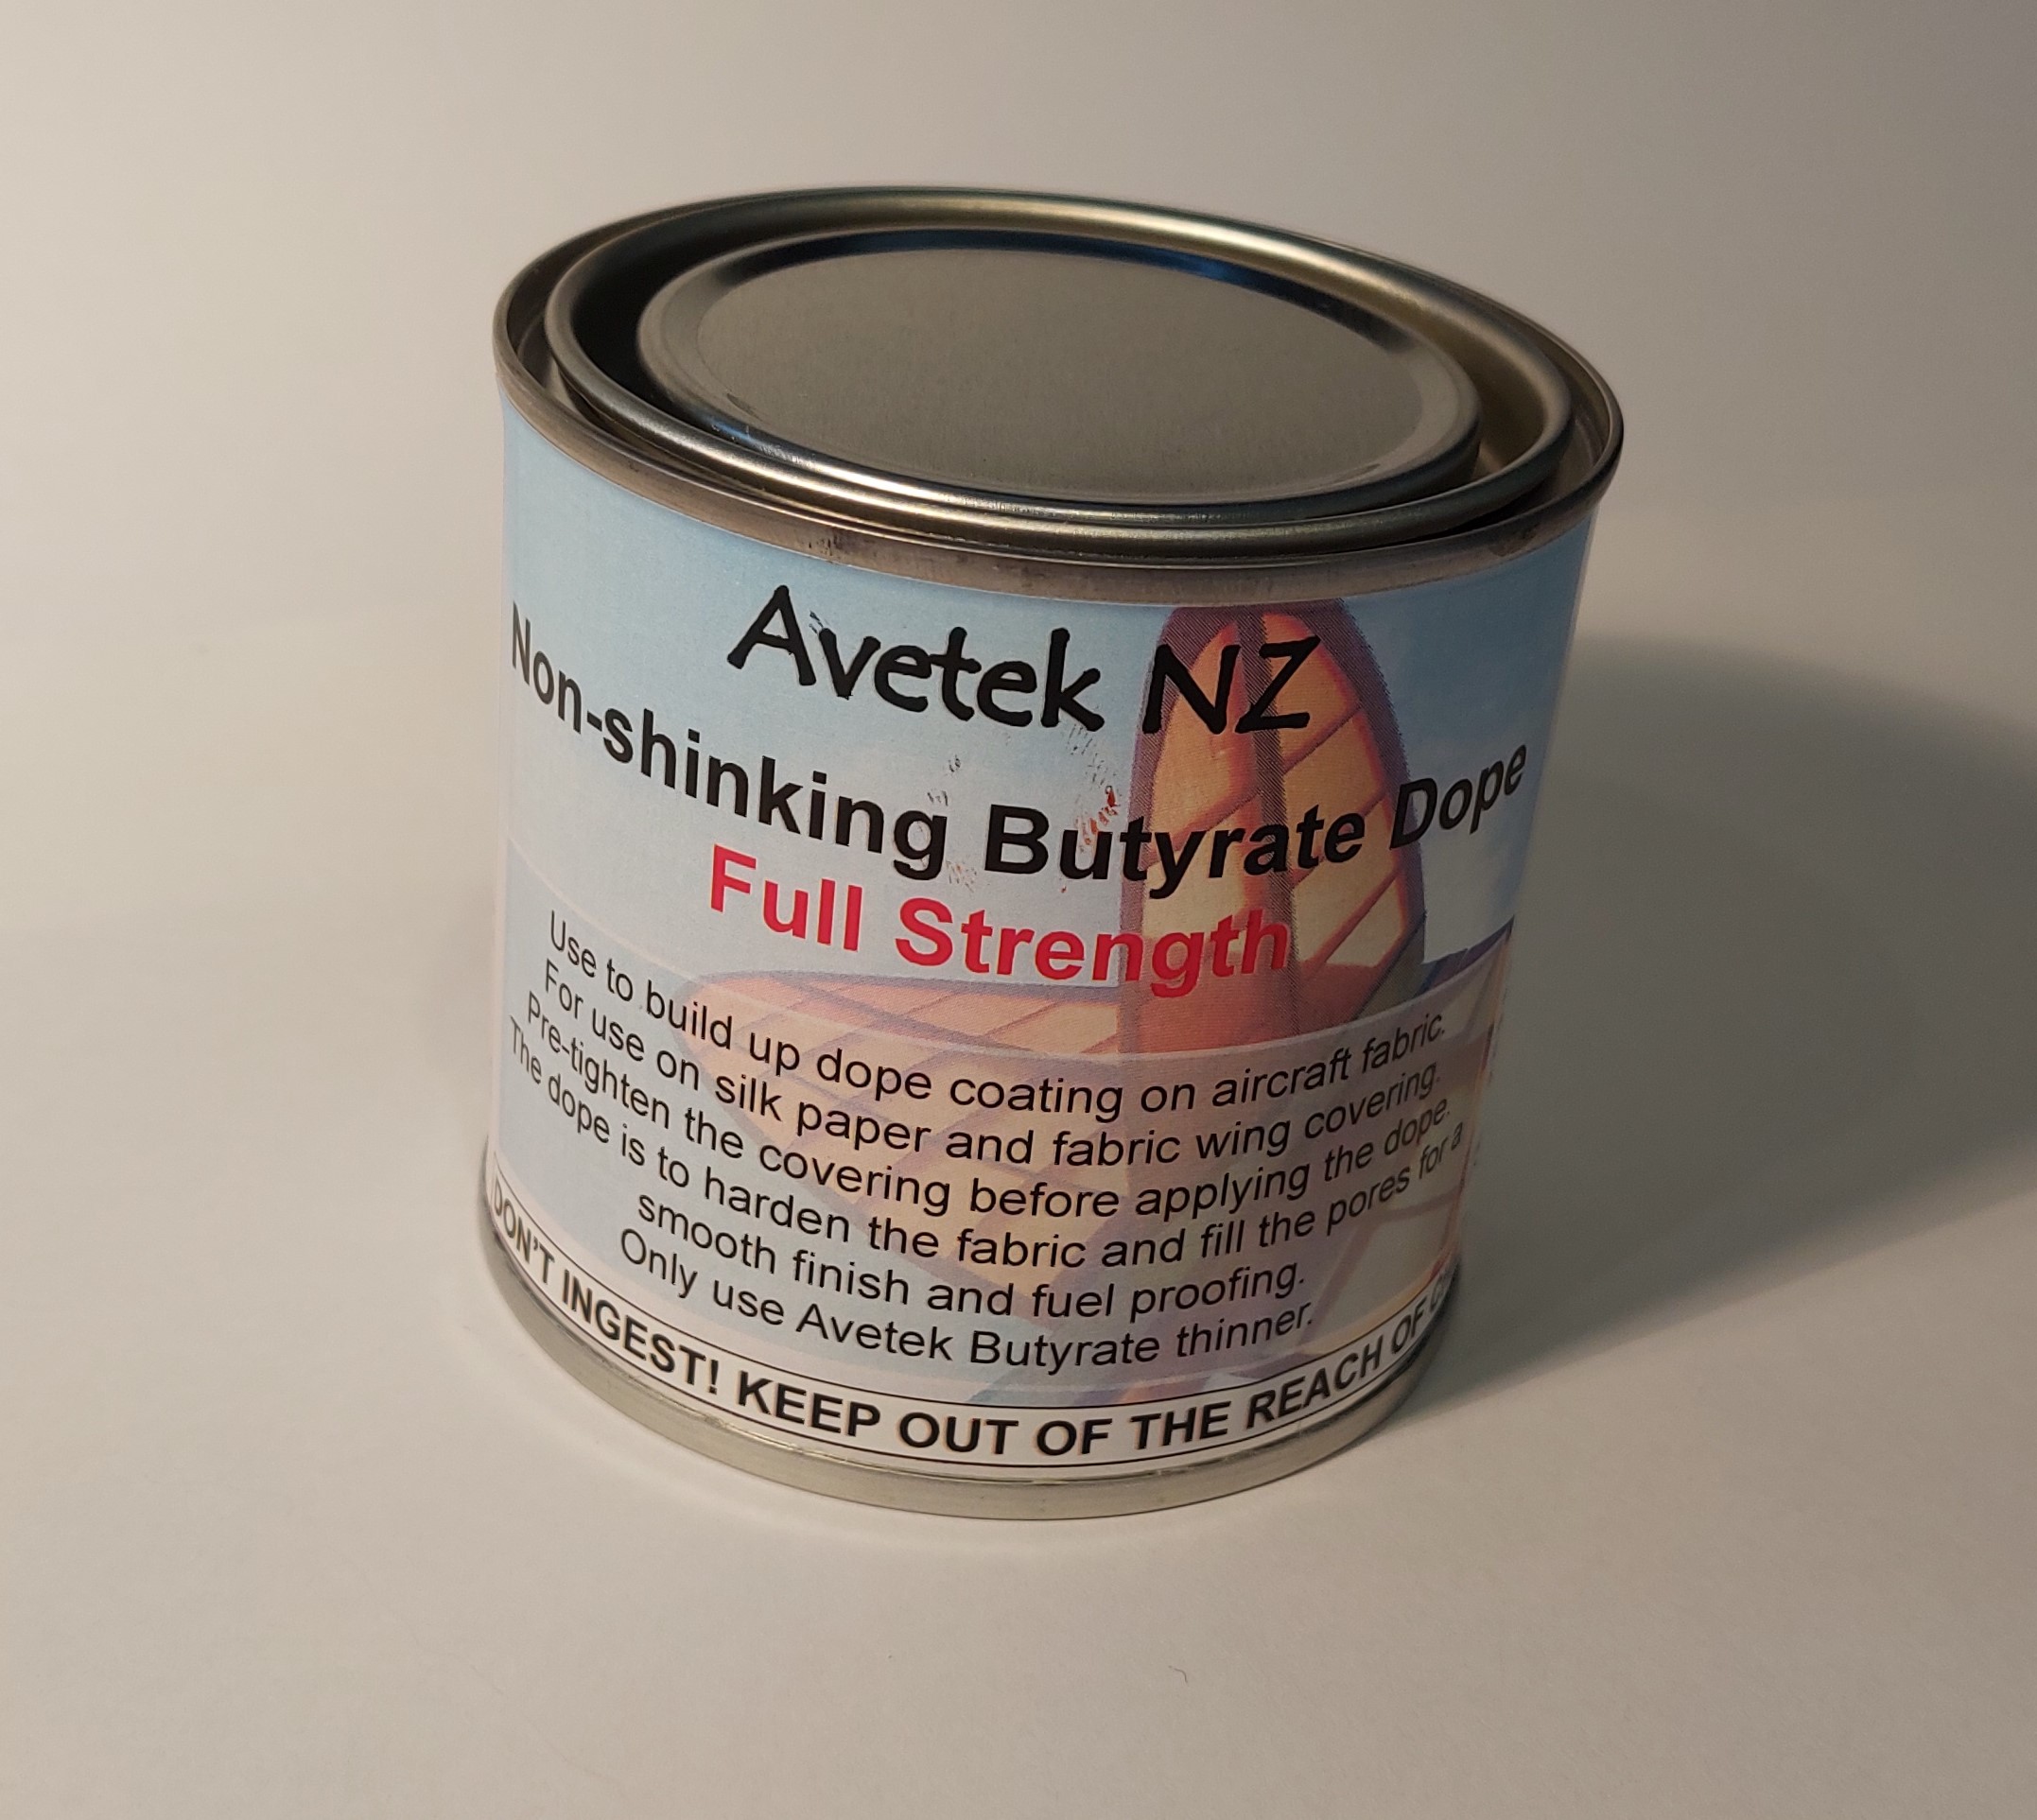 Avetek Non-Shinking Butyrate Dope - Full Strength